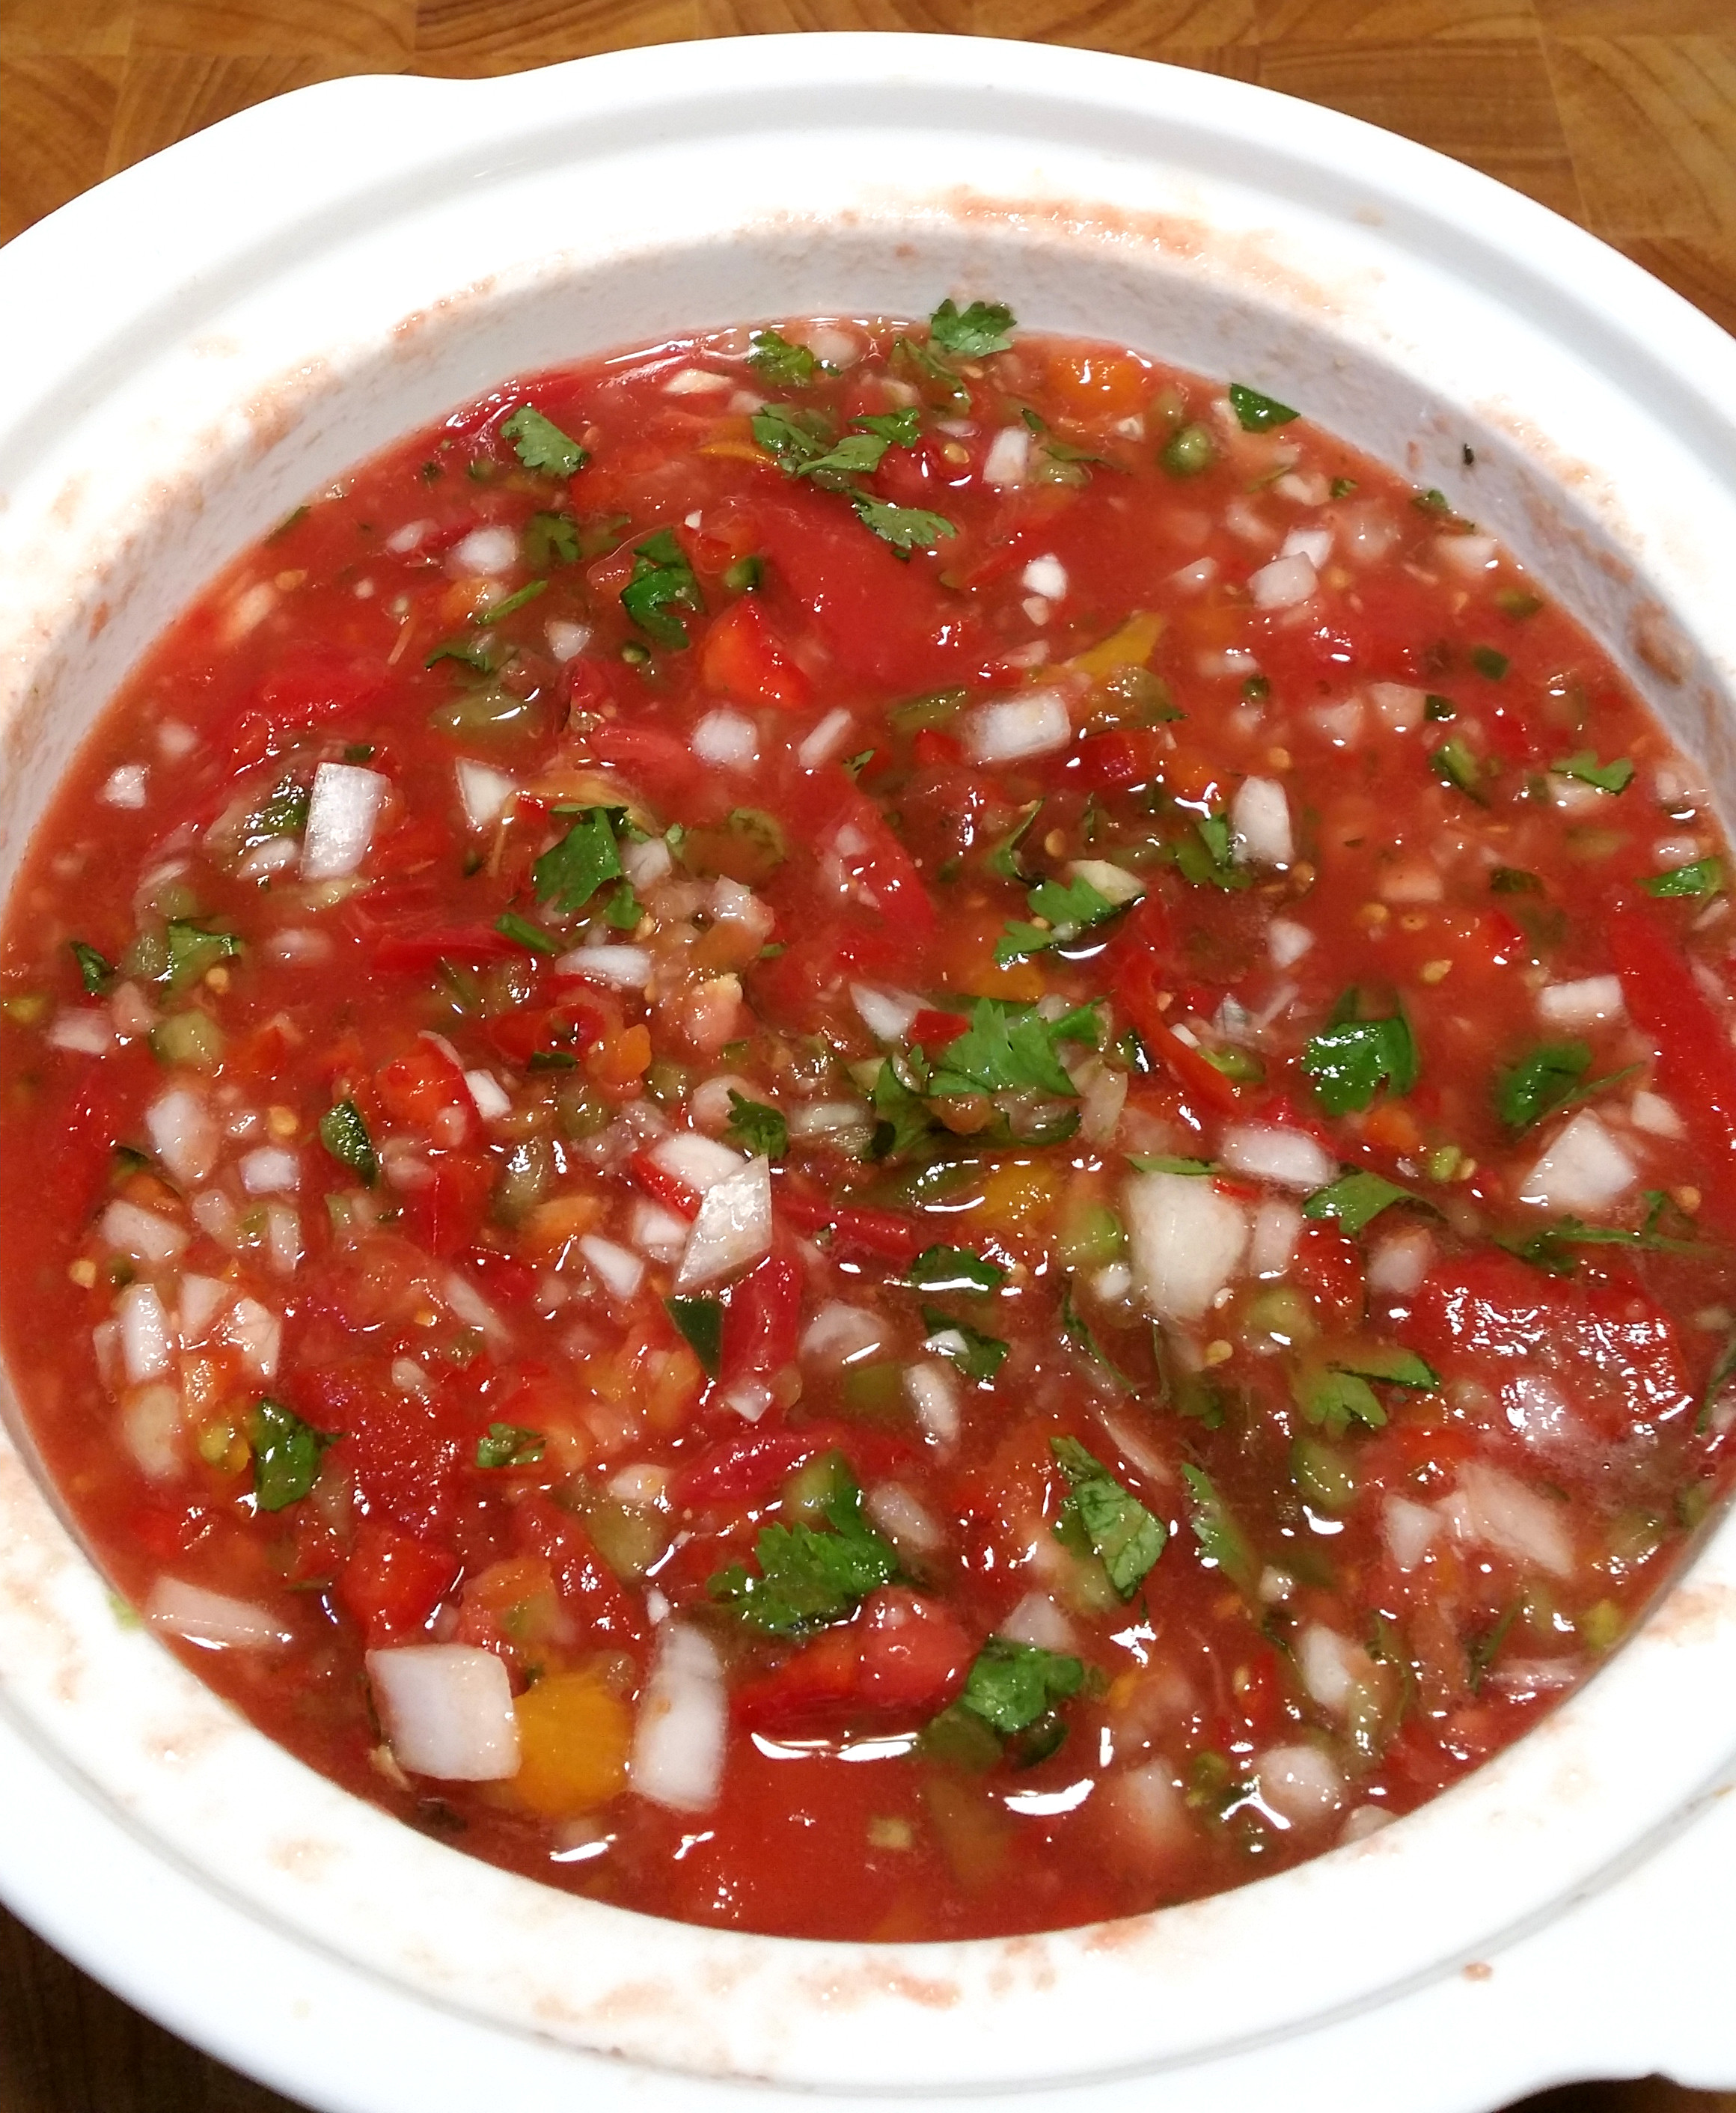 vat of salsa